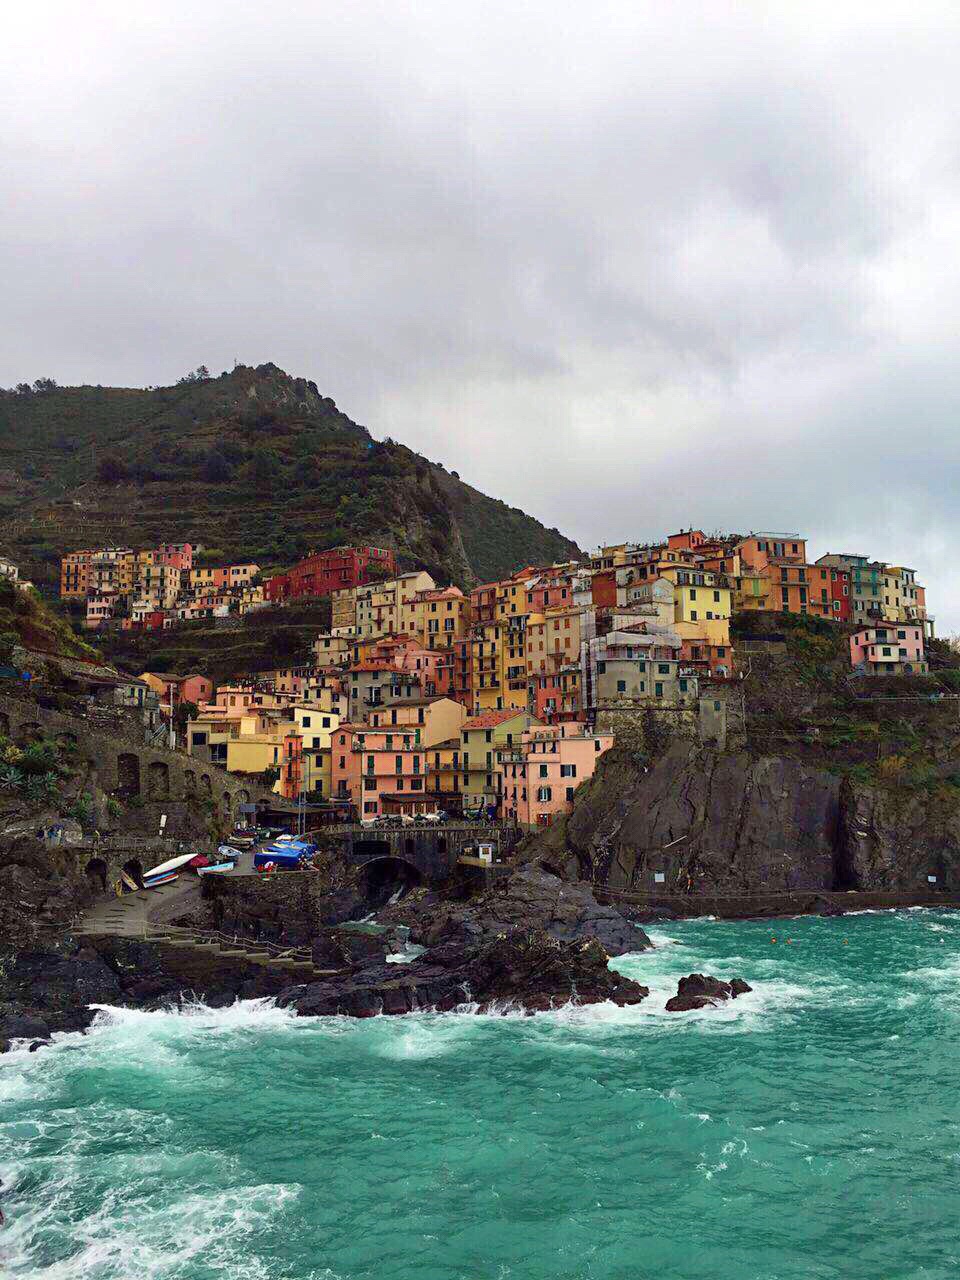 阴雨中的童话世界-意大利五渔村